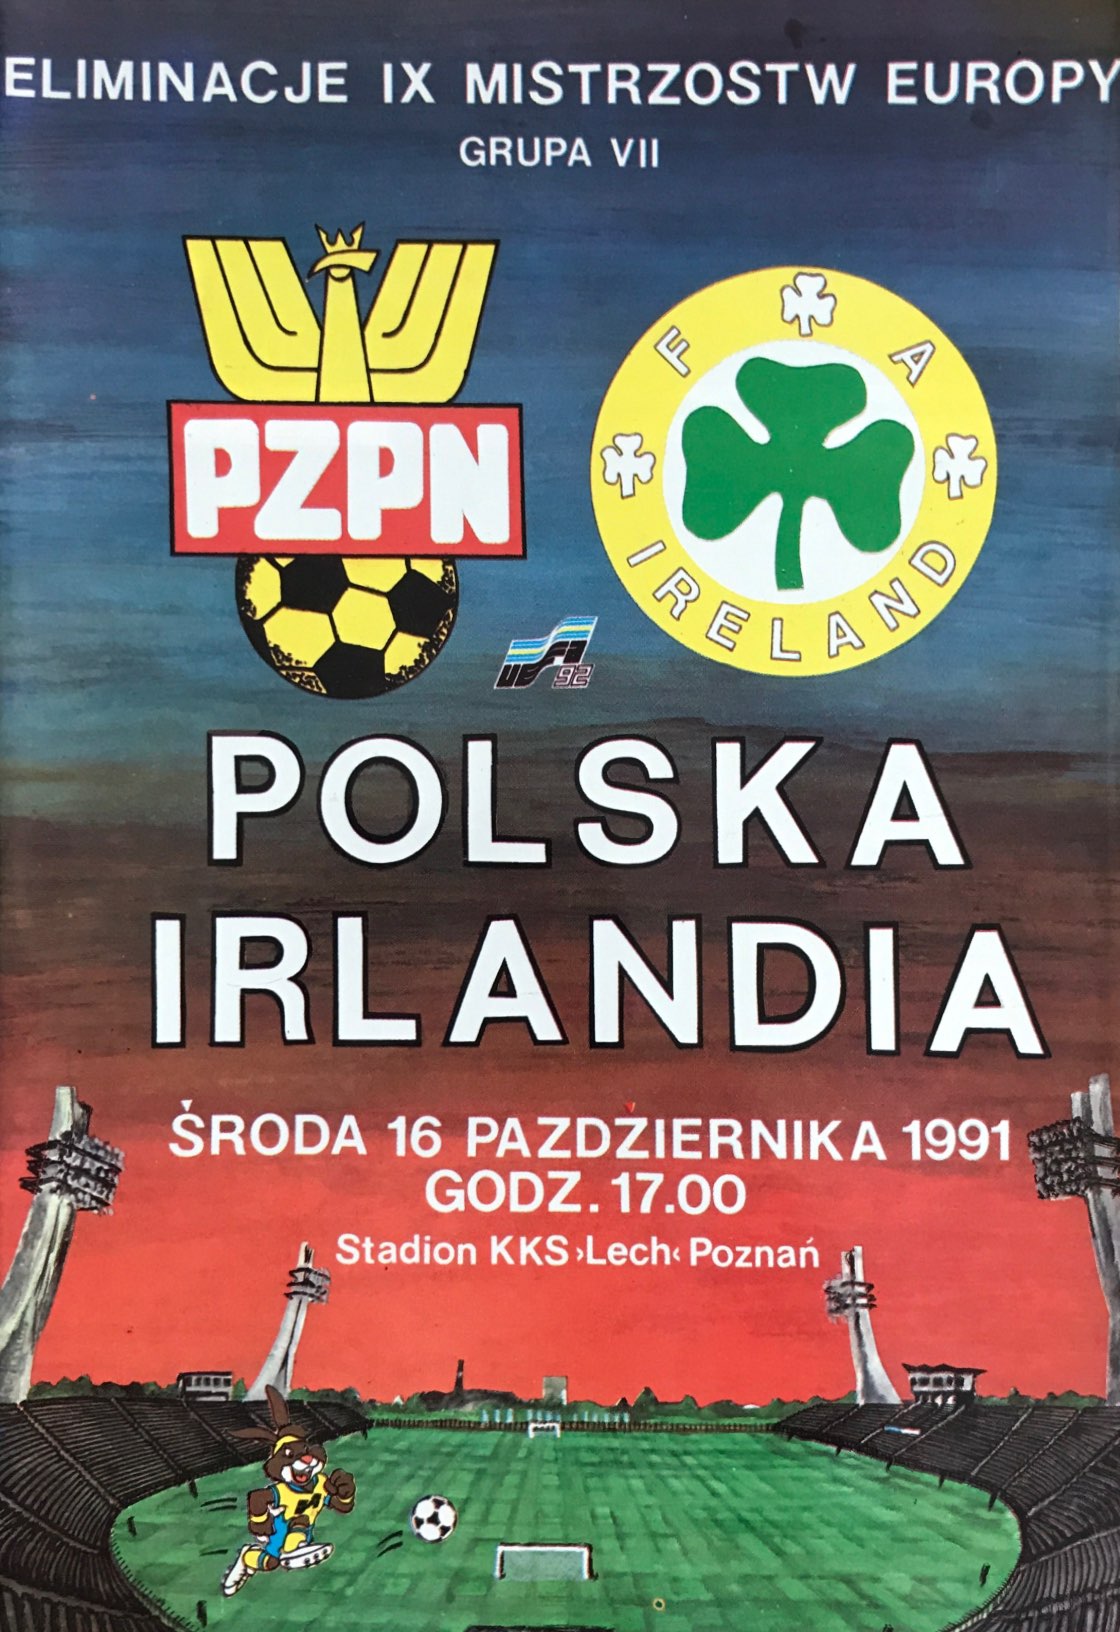 Program meczowy Polska - Irlandia 3:3 (16.10.1991)